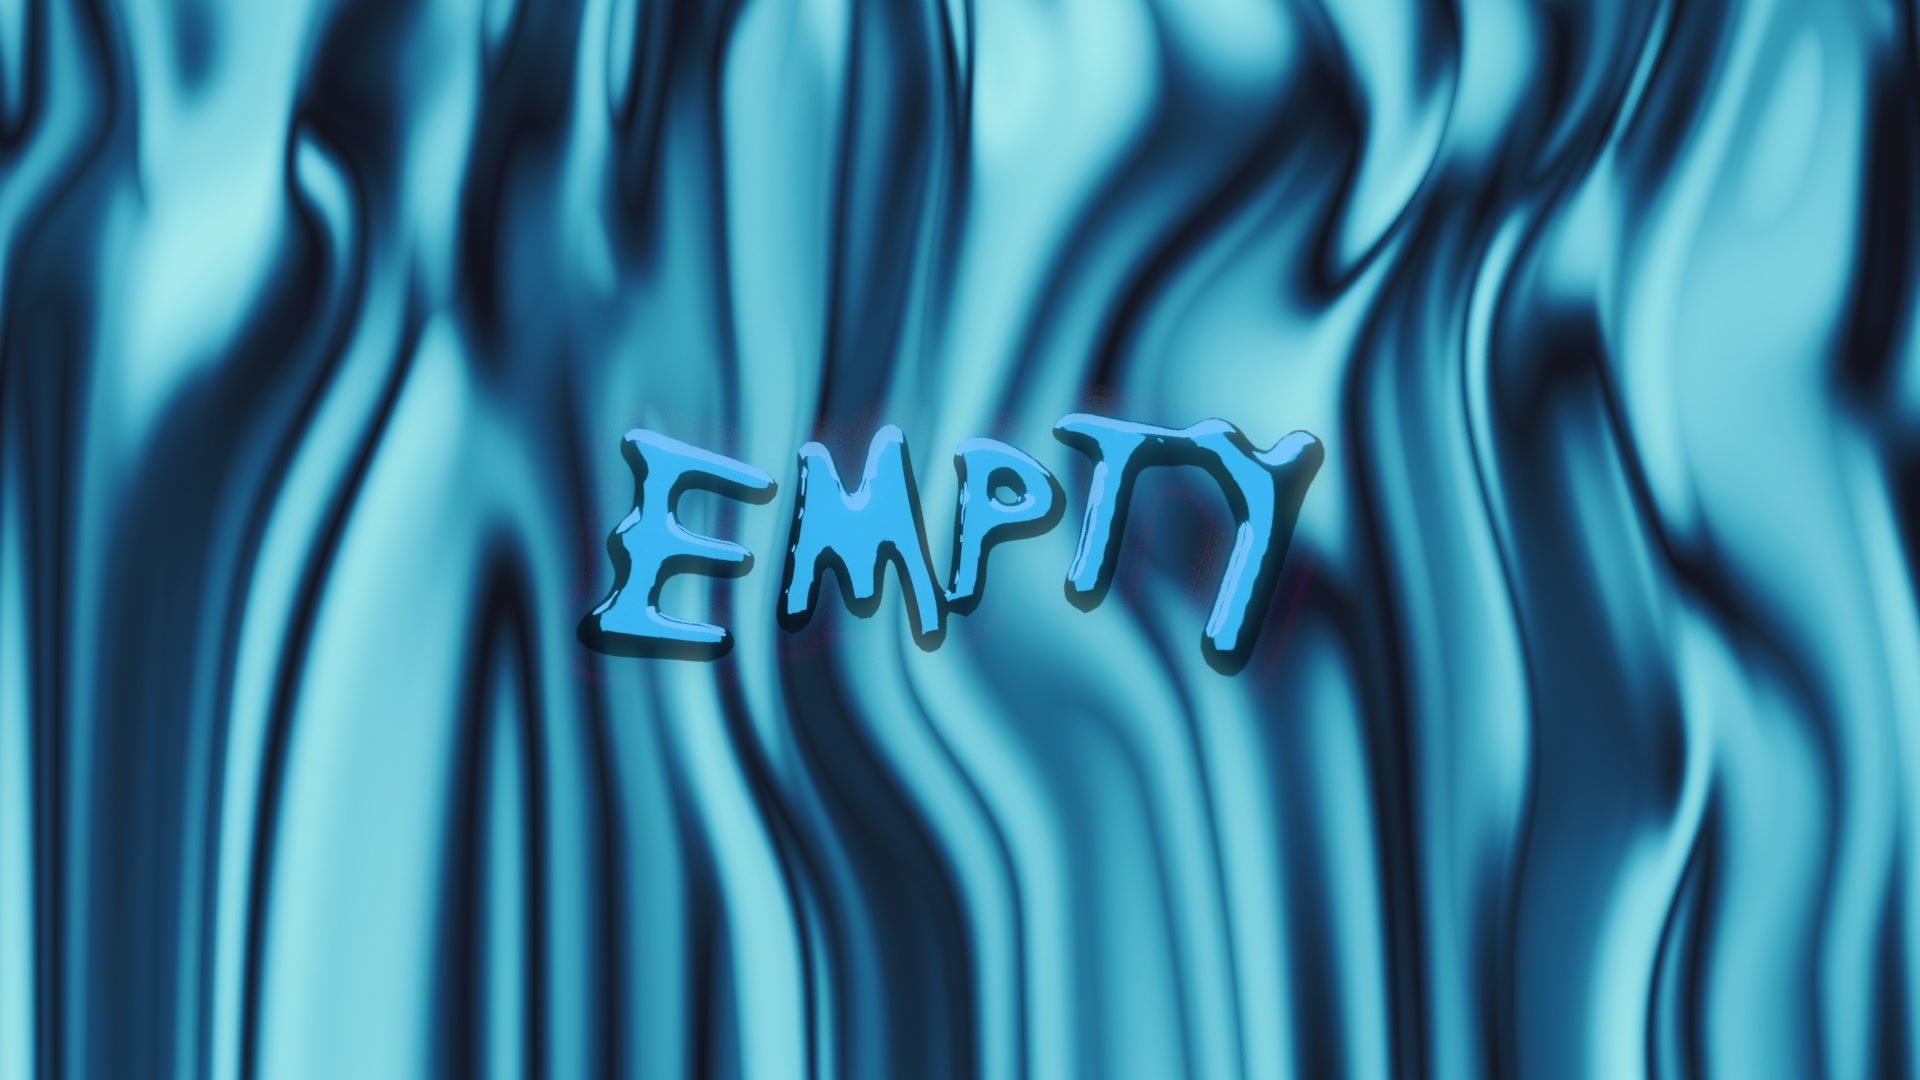 Tauren Wells – Empty (Visualizer)